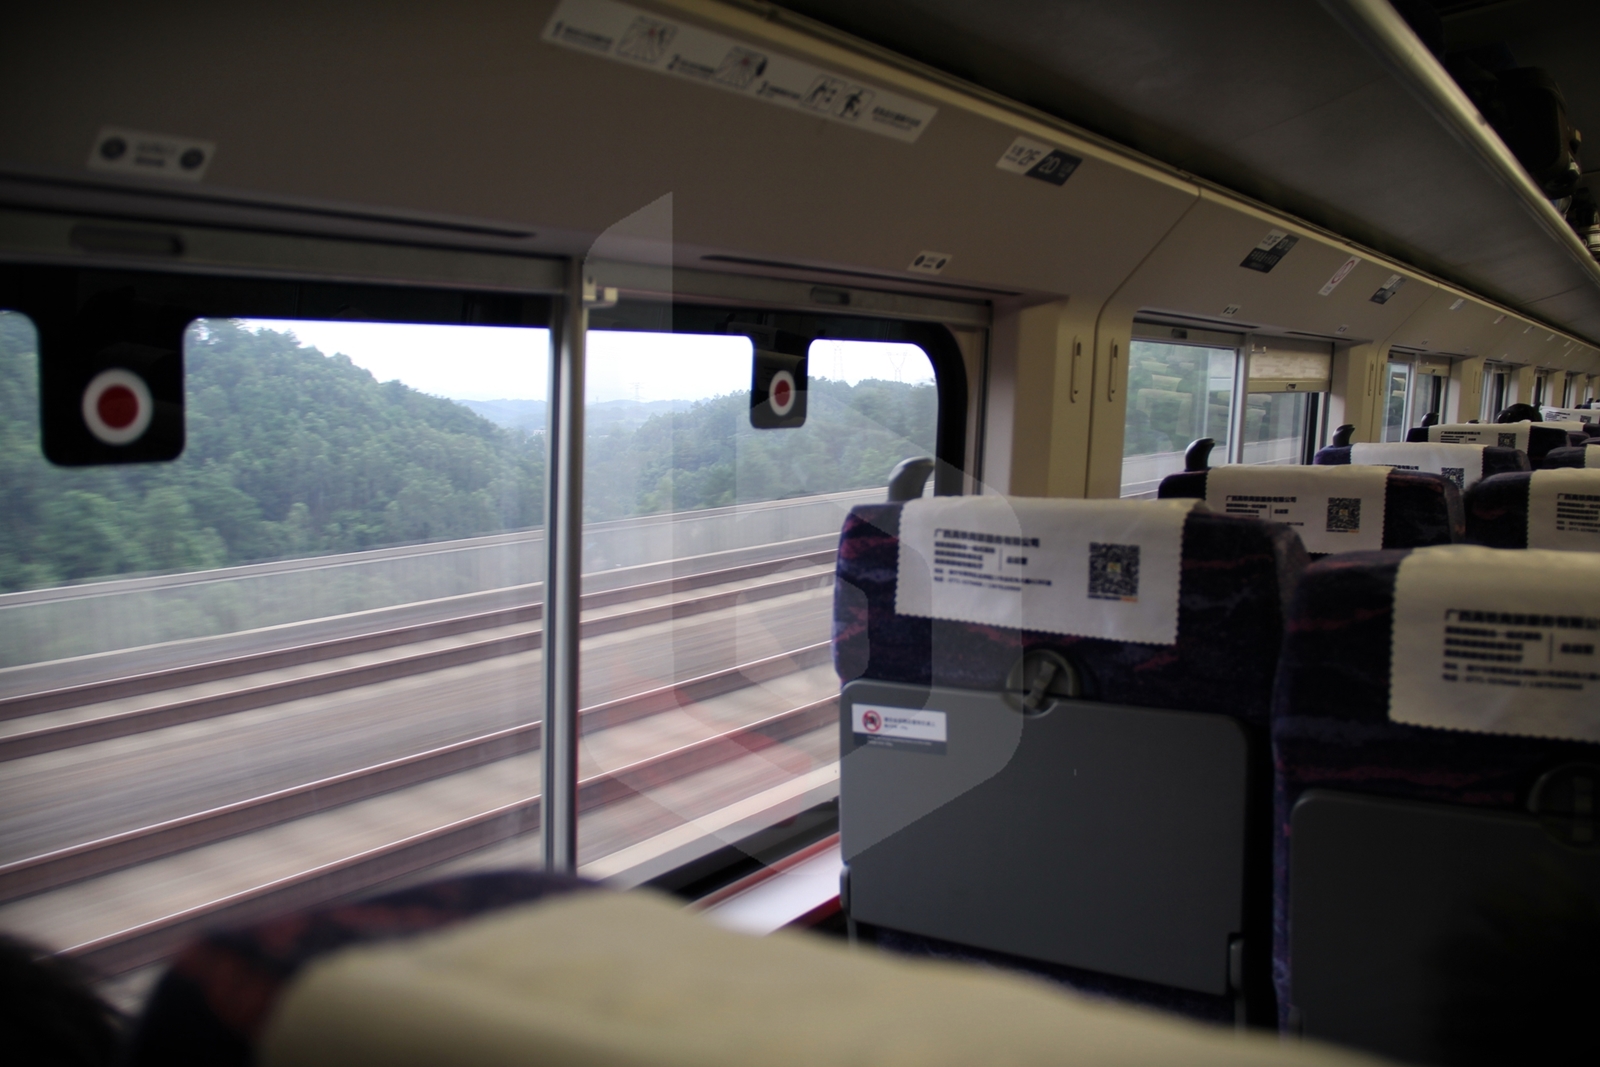 Nanning to Guangzhou by train